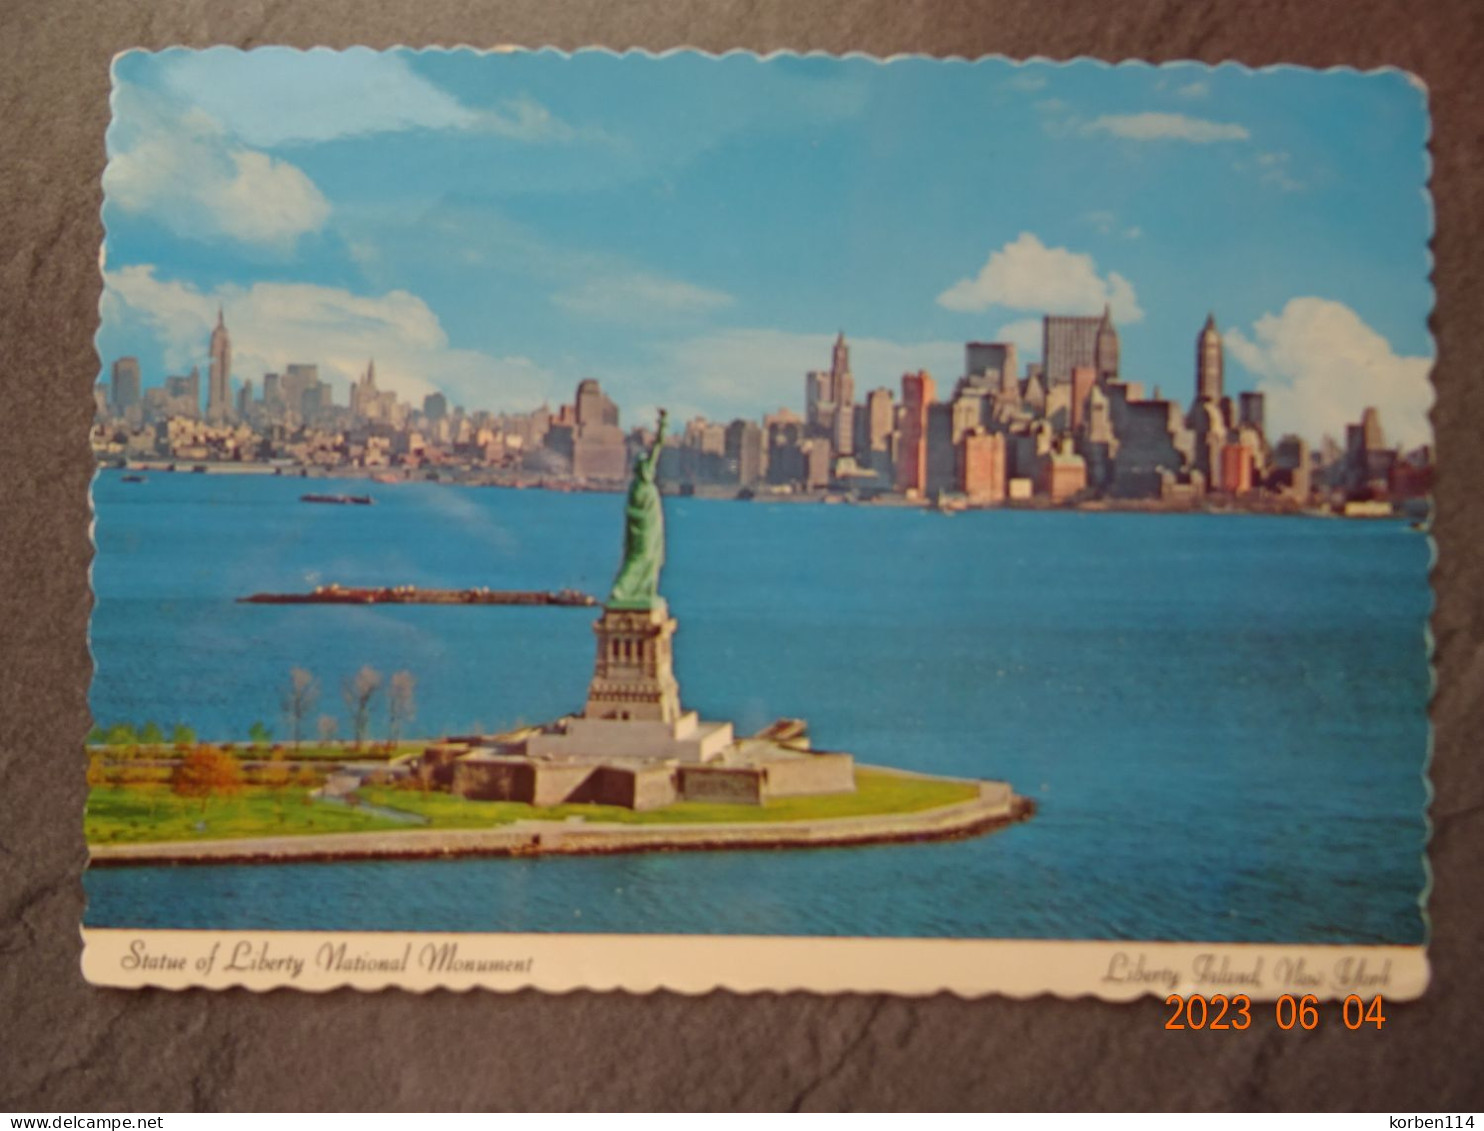 LIBERTY STATUE - Statue Of Liberty